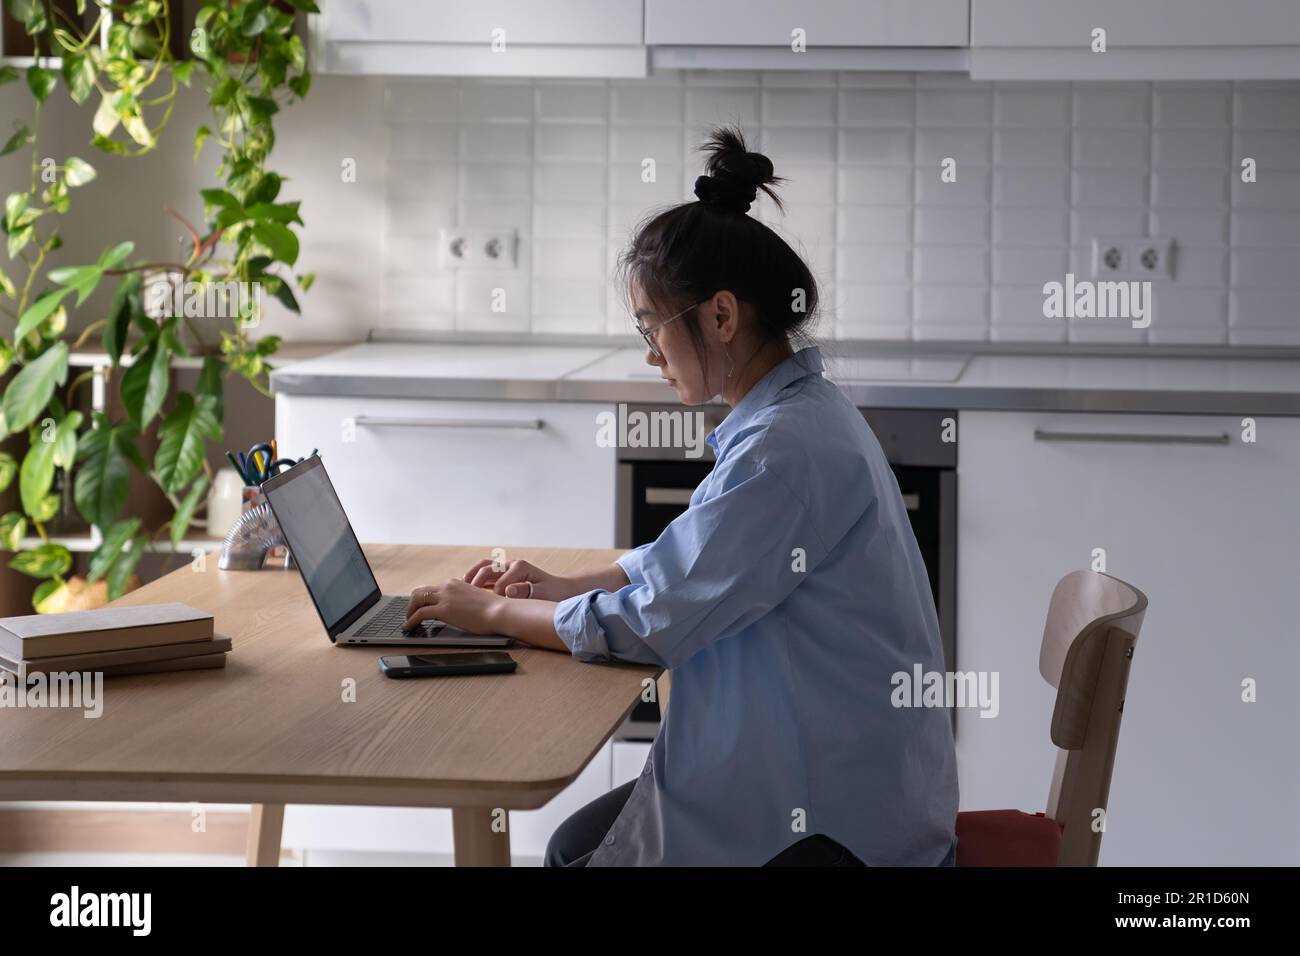 Una donna asiatica focalizzata che lavora da remoto si siede al tavolo con un computer portatile in cucina Foto Stock